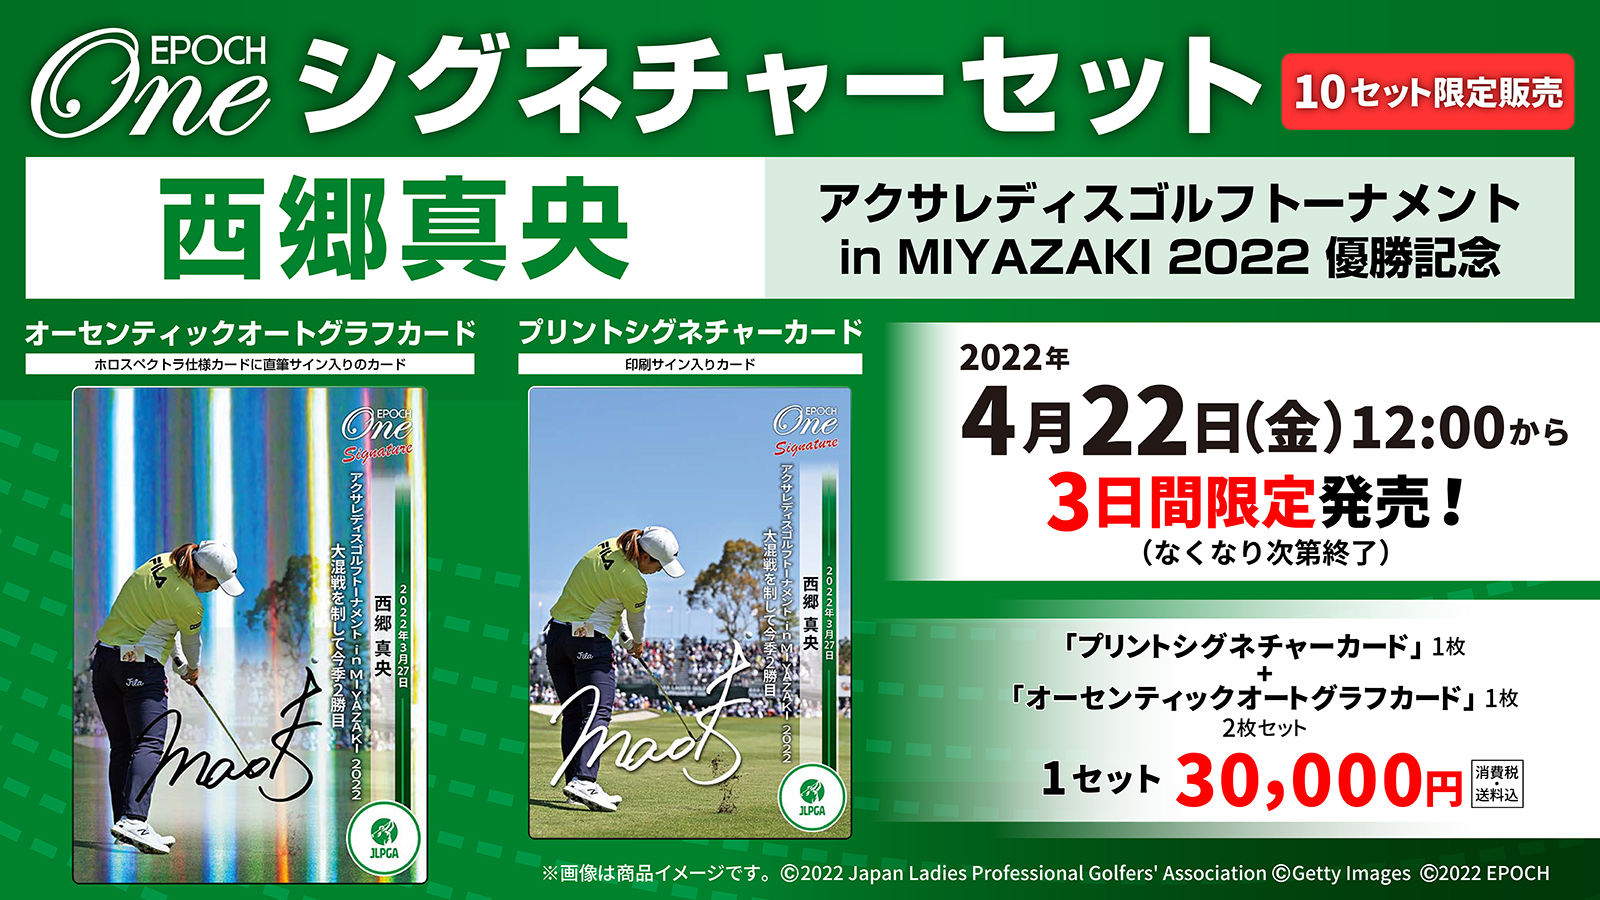 【西郷真央】シグネチャーセット『アクサレディスゴルフトーナメント in MIYAZAKI 2022優勝記念』